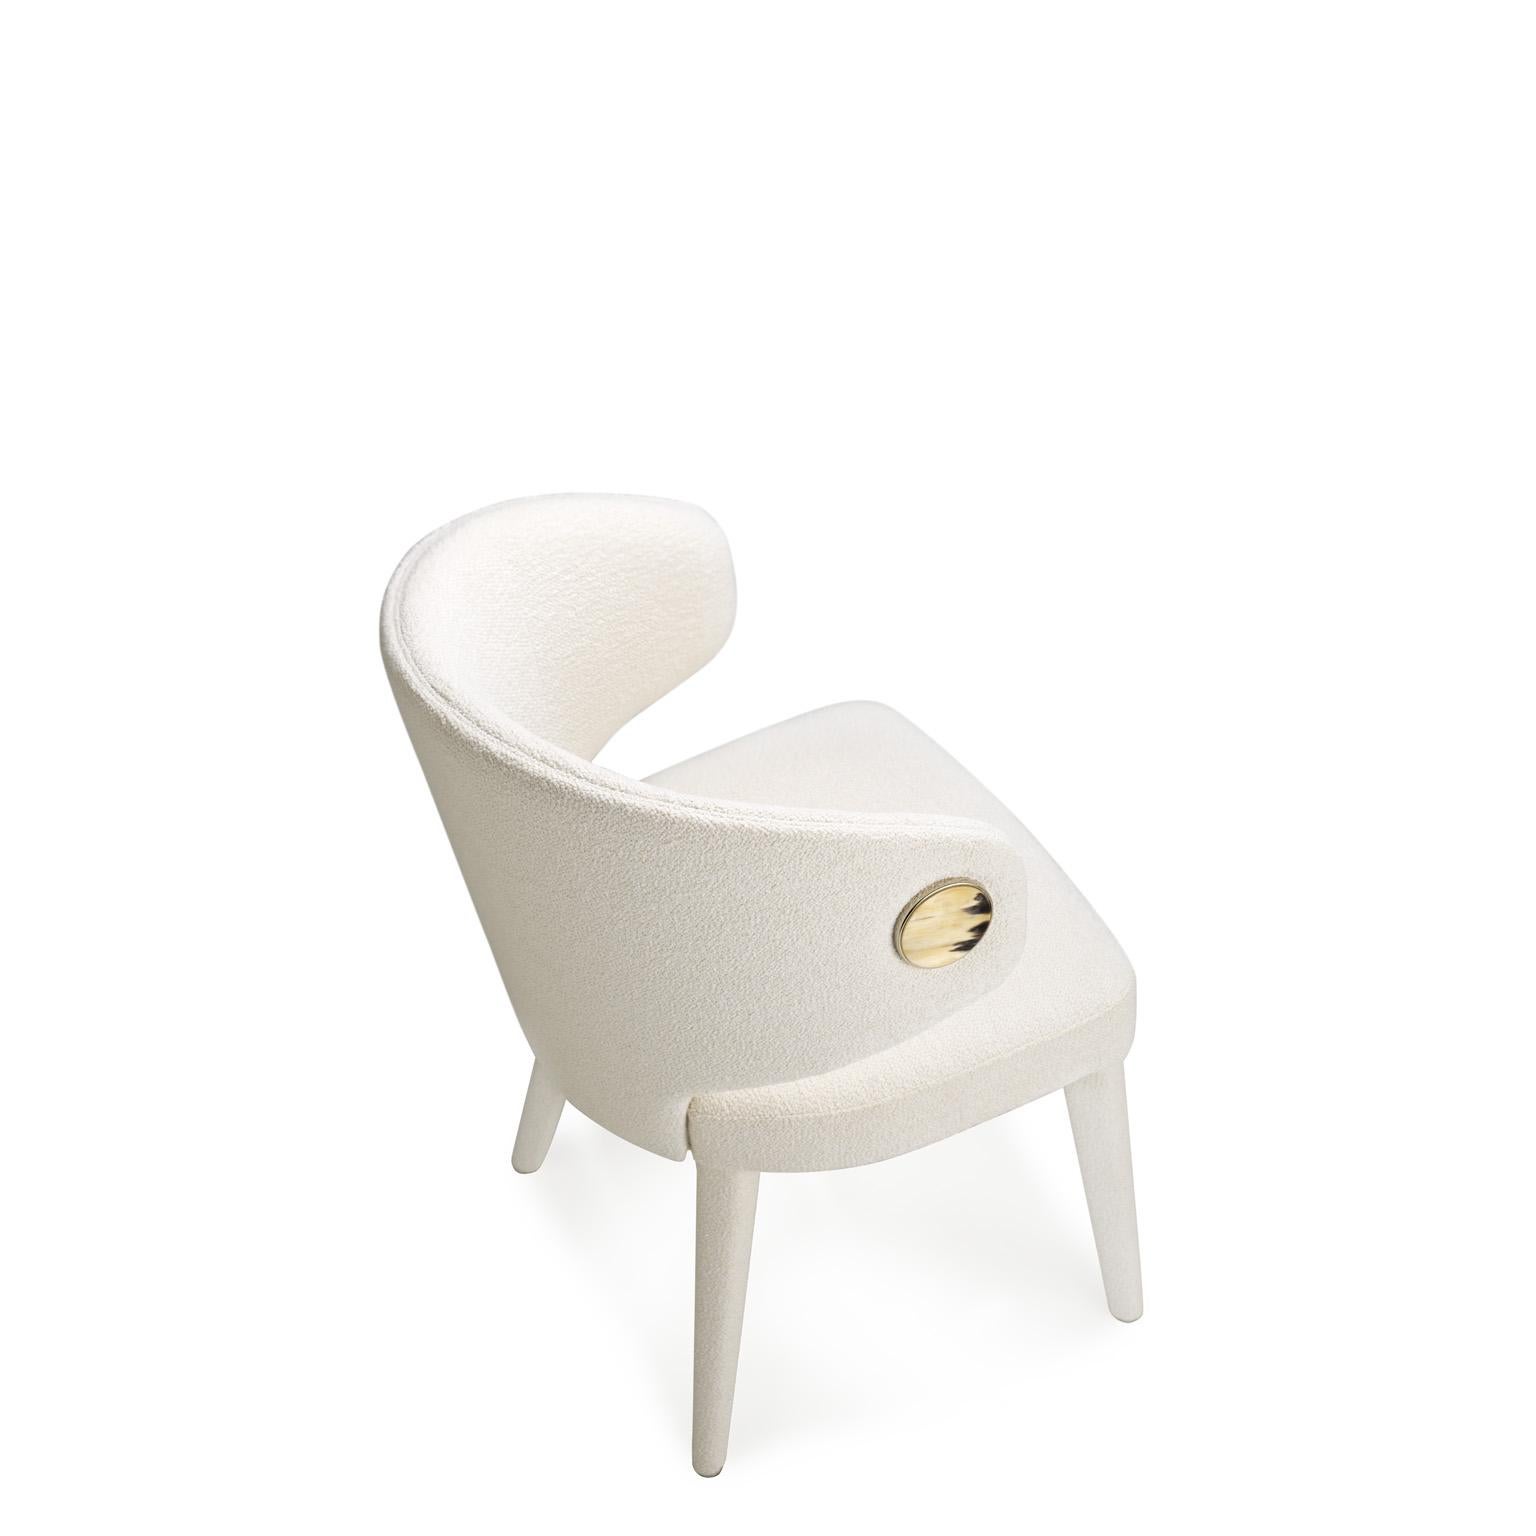 Unser Circe-Stuhl ist Ausdruck meisterlicher Handwerkskunst und eine einzigartige Mischung aus wertvollen Rohstoffen und durchdachten Details. Circe zeichnet sich durch weiche Volumina aus und verfügt über eine umhüllende Rückenlehne, die willkommen